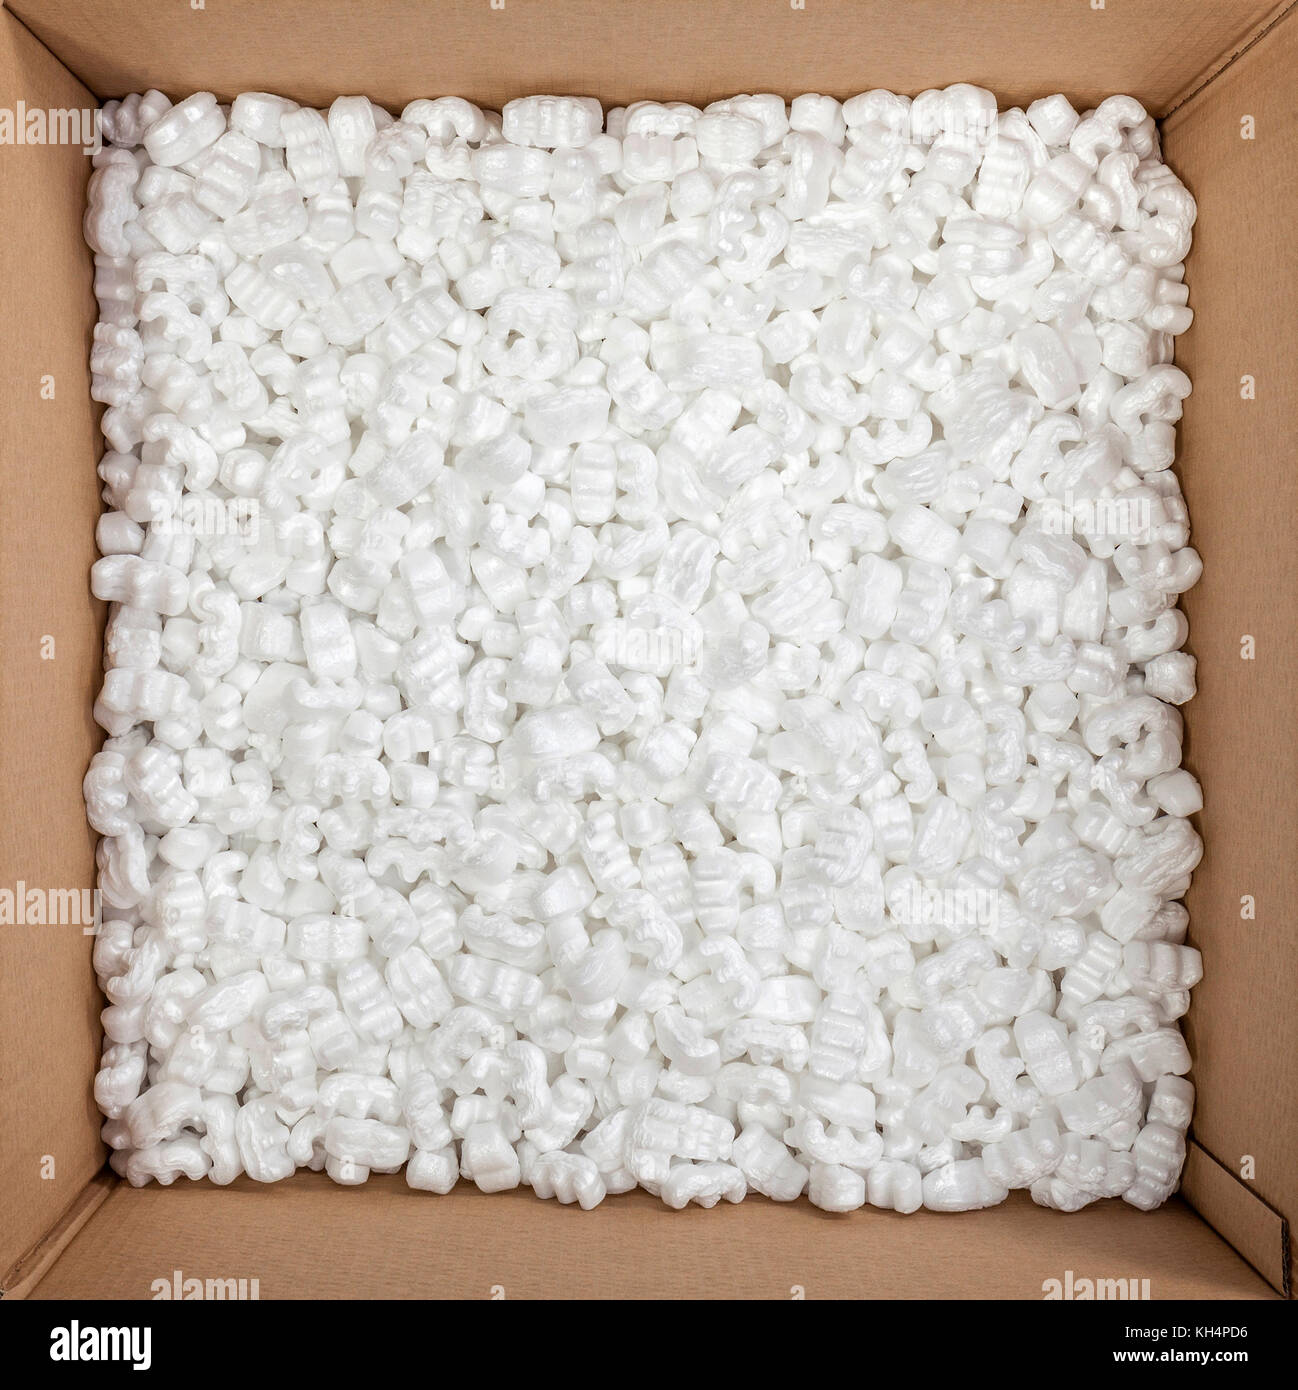 Emballage boîte en polystyrène à l'intérieur d'arachides Banque D'Images